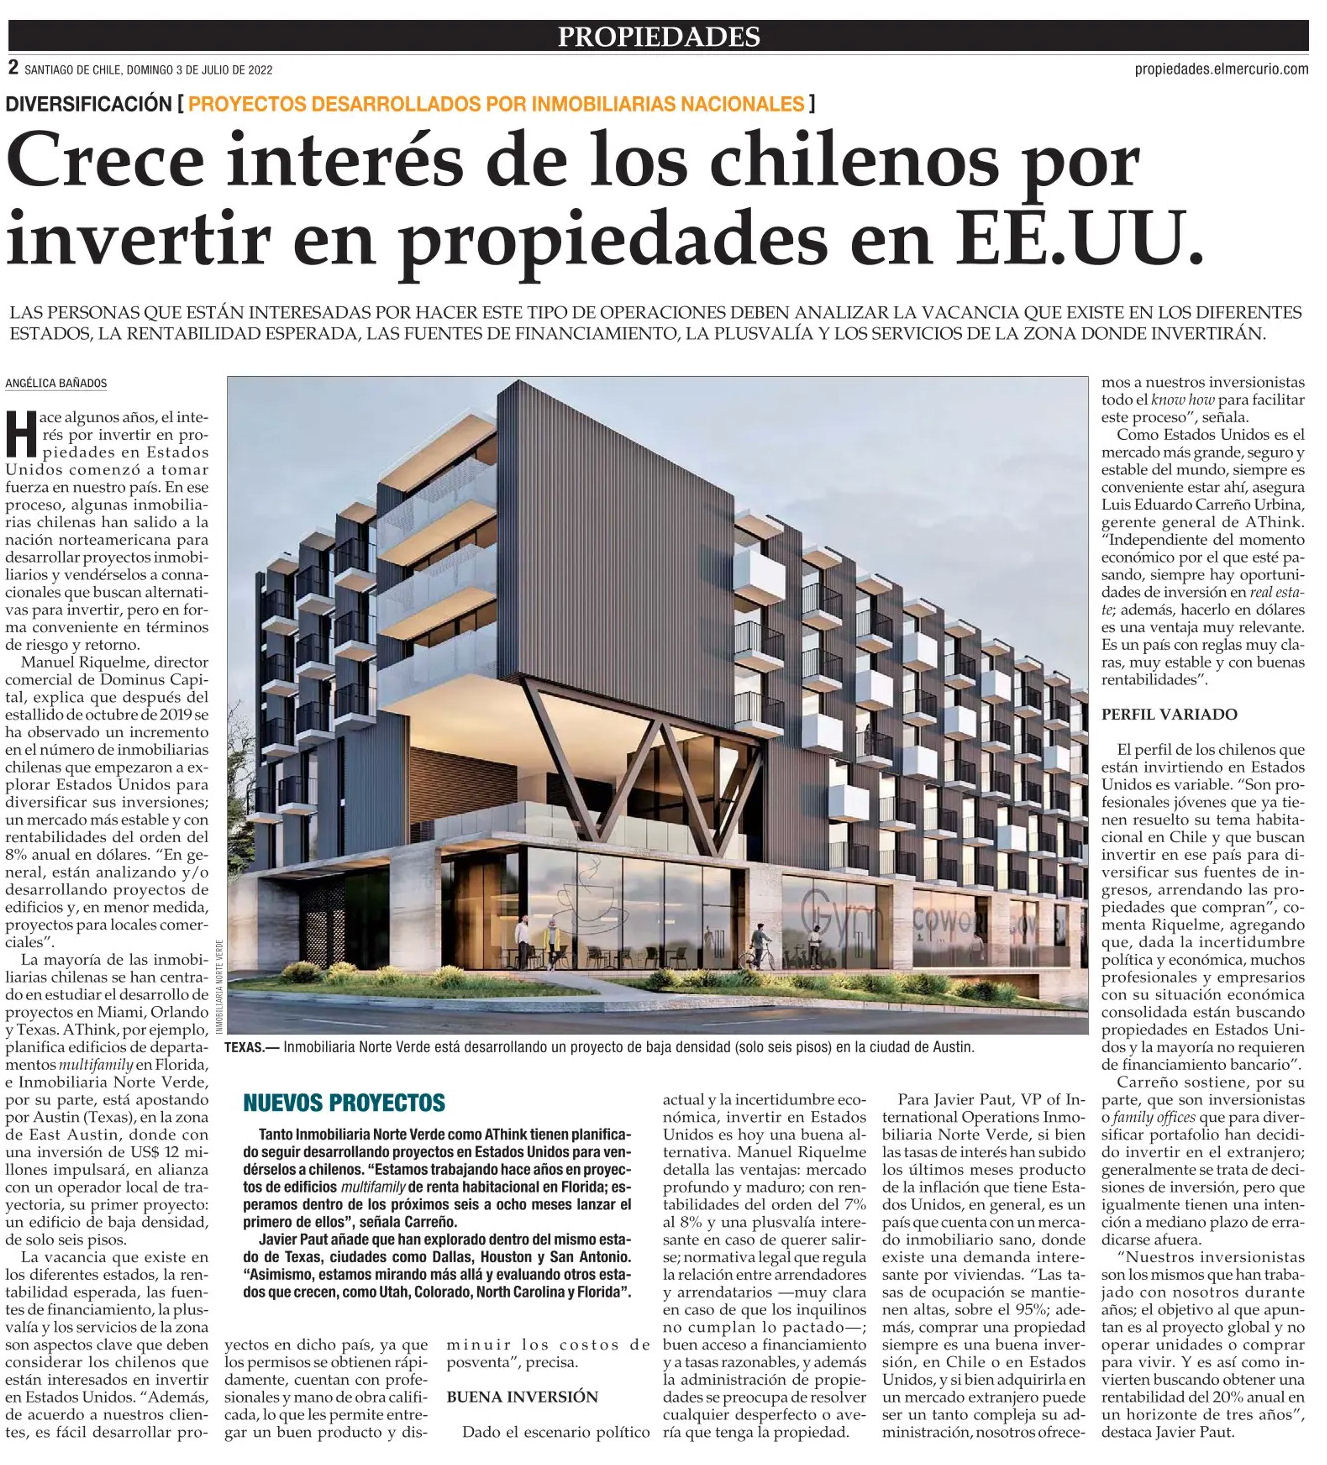 Crece interés de los chilenos por invertir propiedades en EE.UU